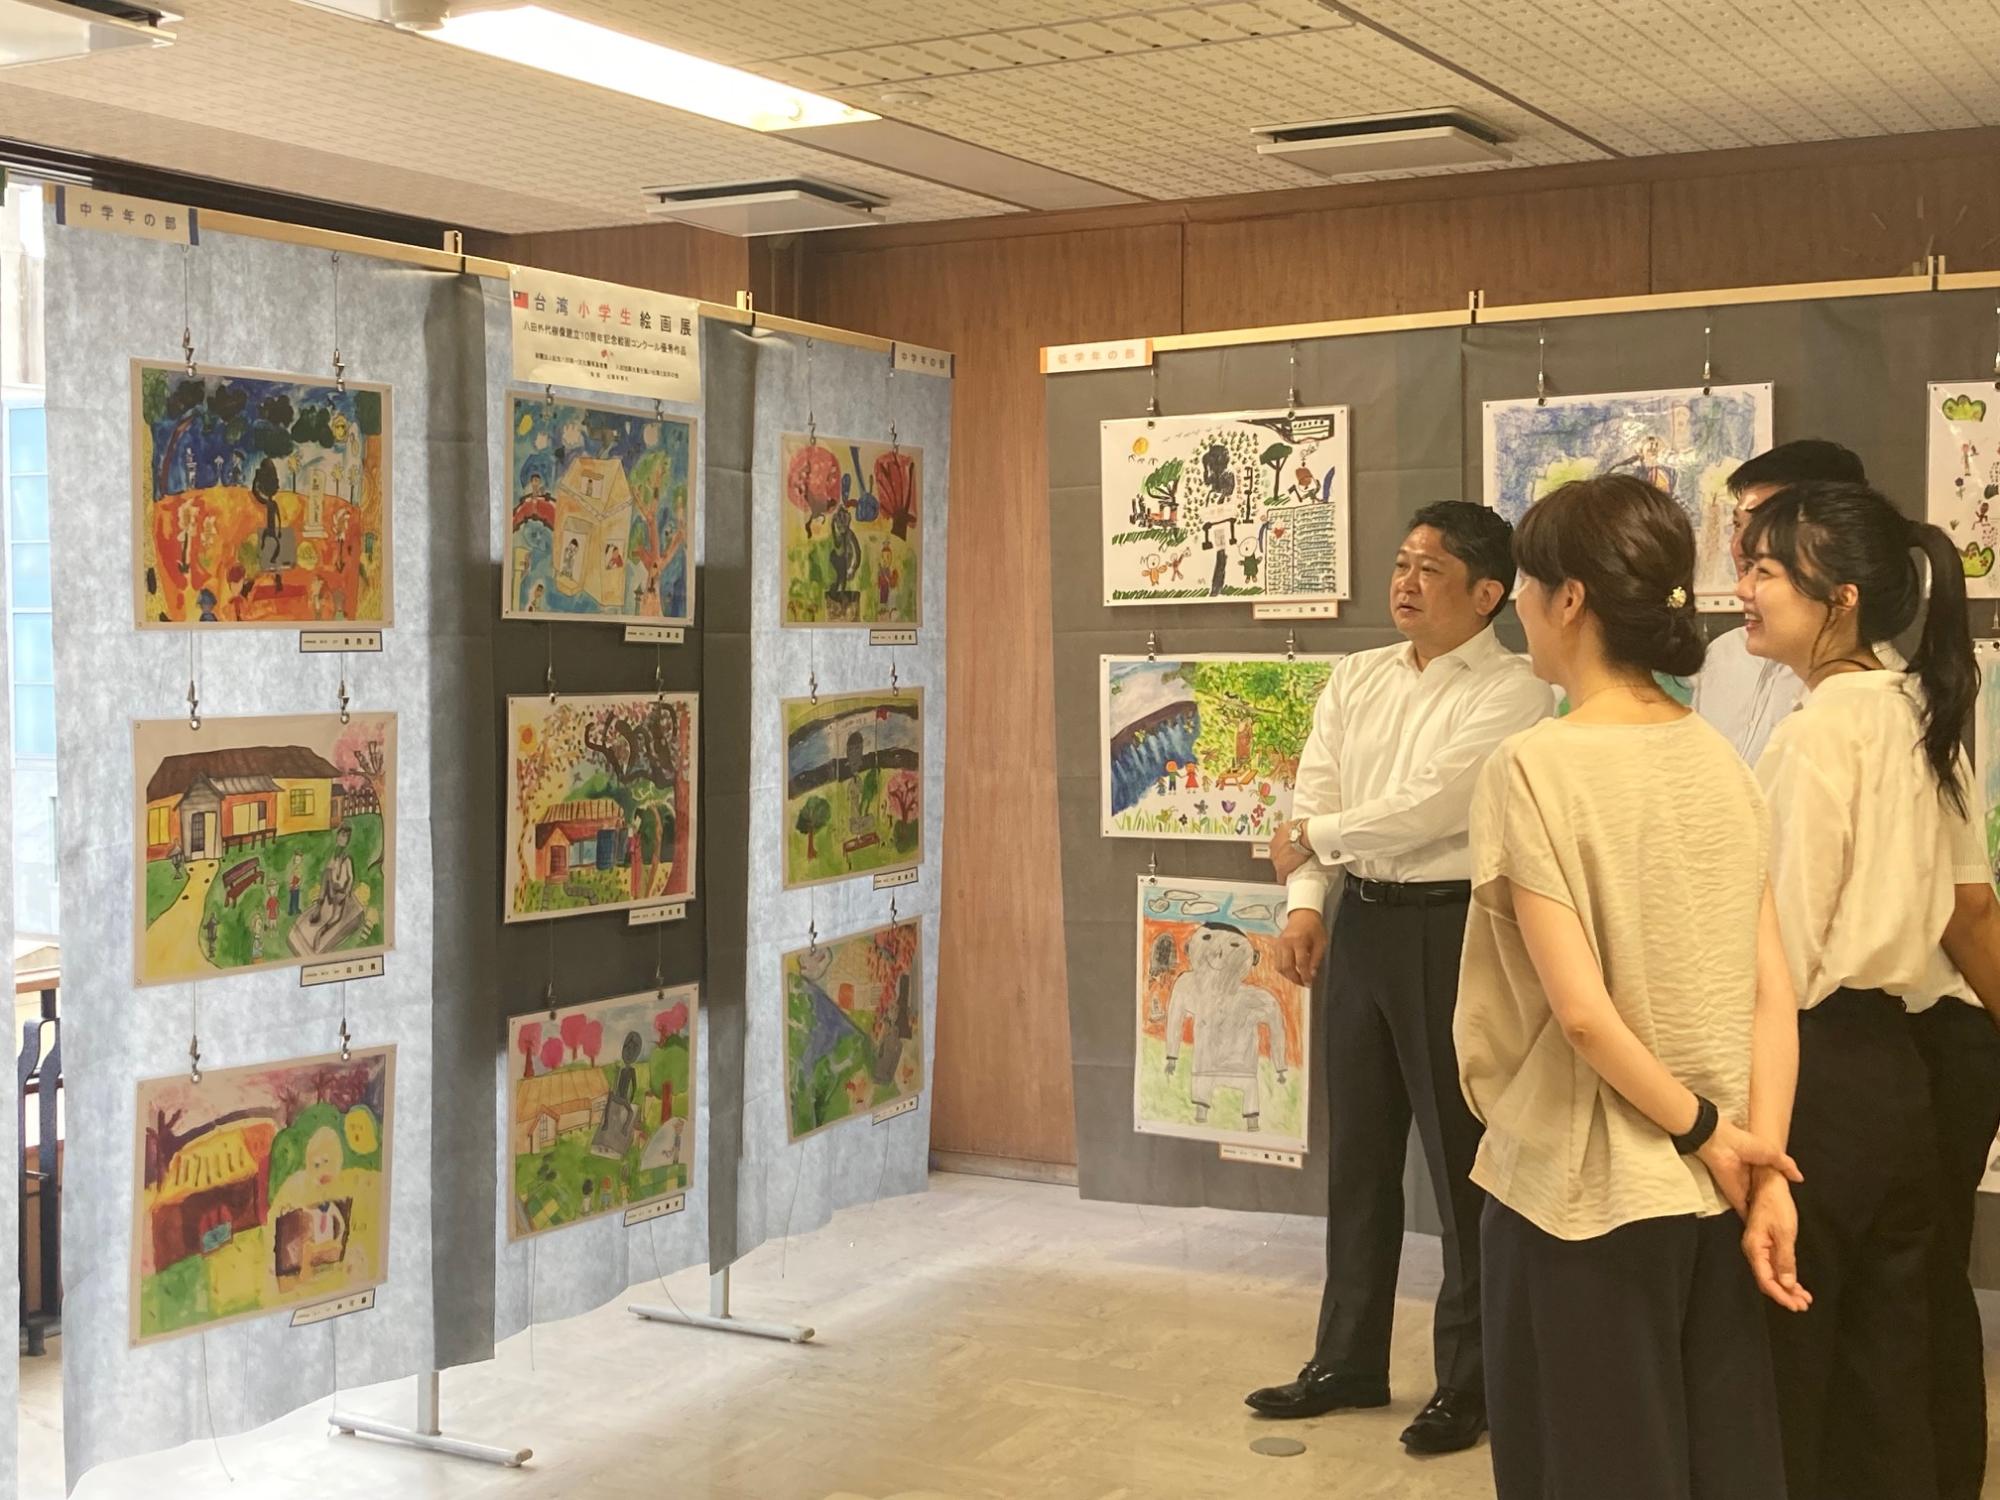 八田與一技師と外代樹夫人を台湾の子ども達が描いた絵の巡回展2